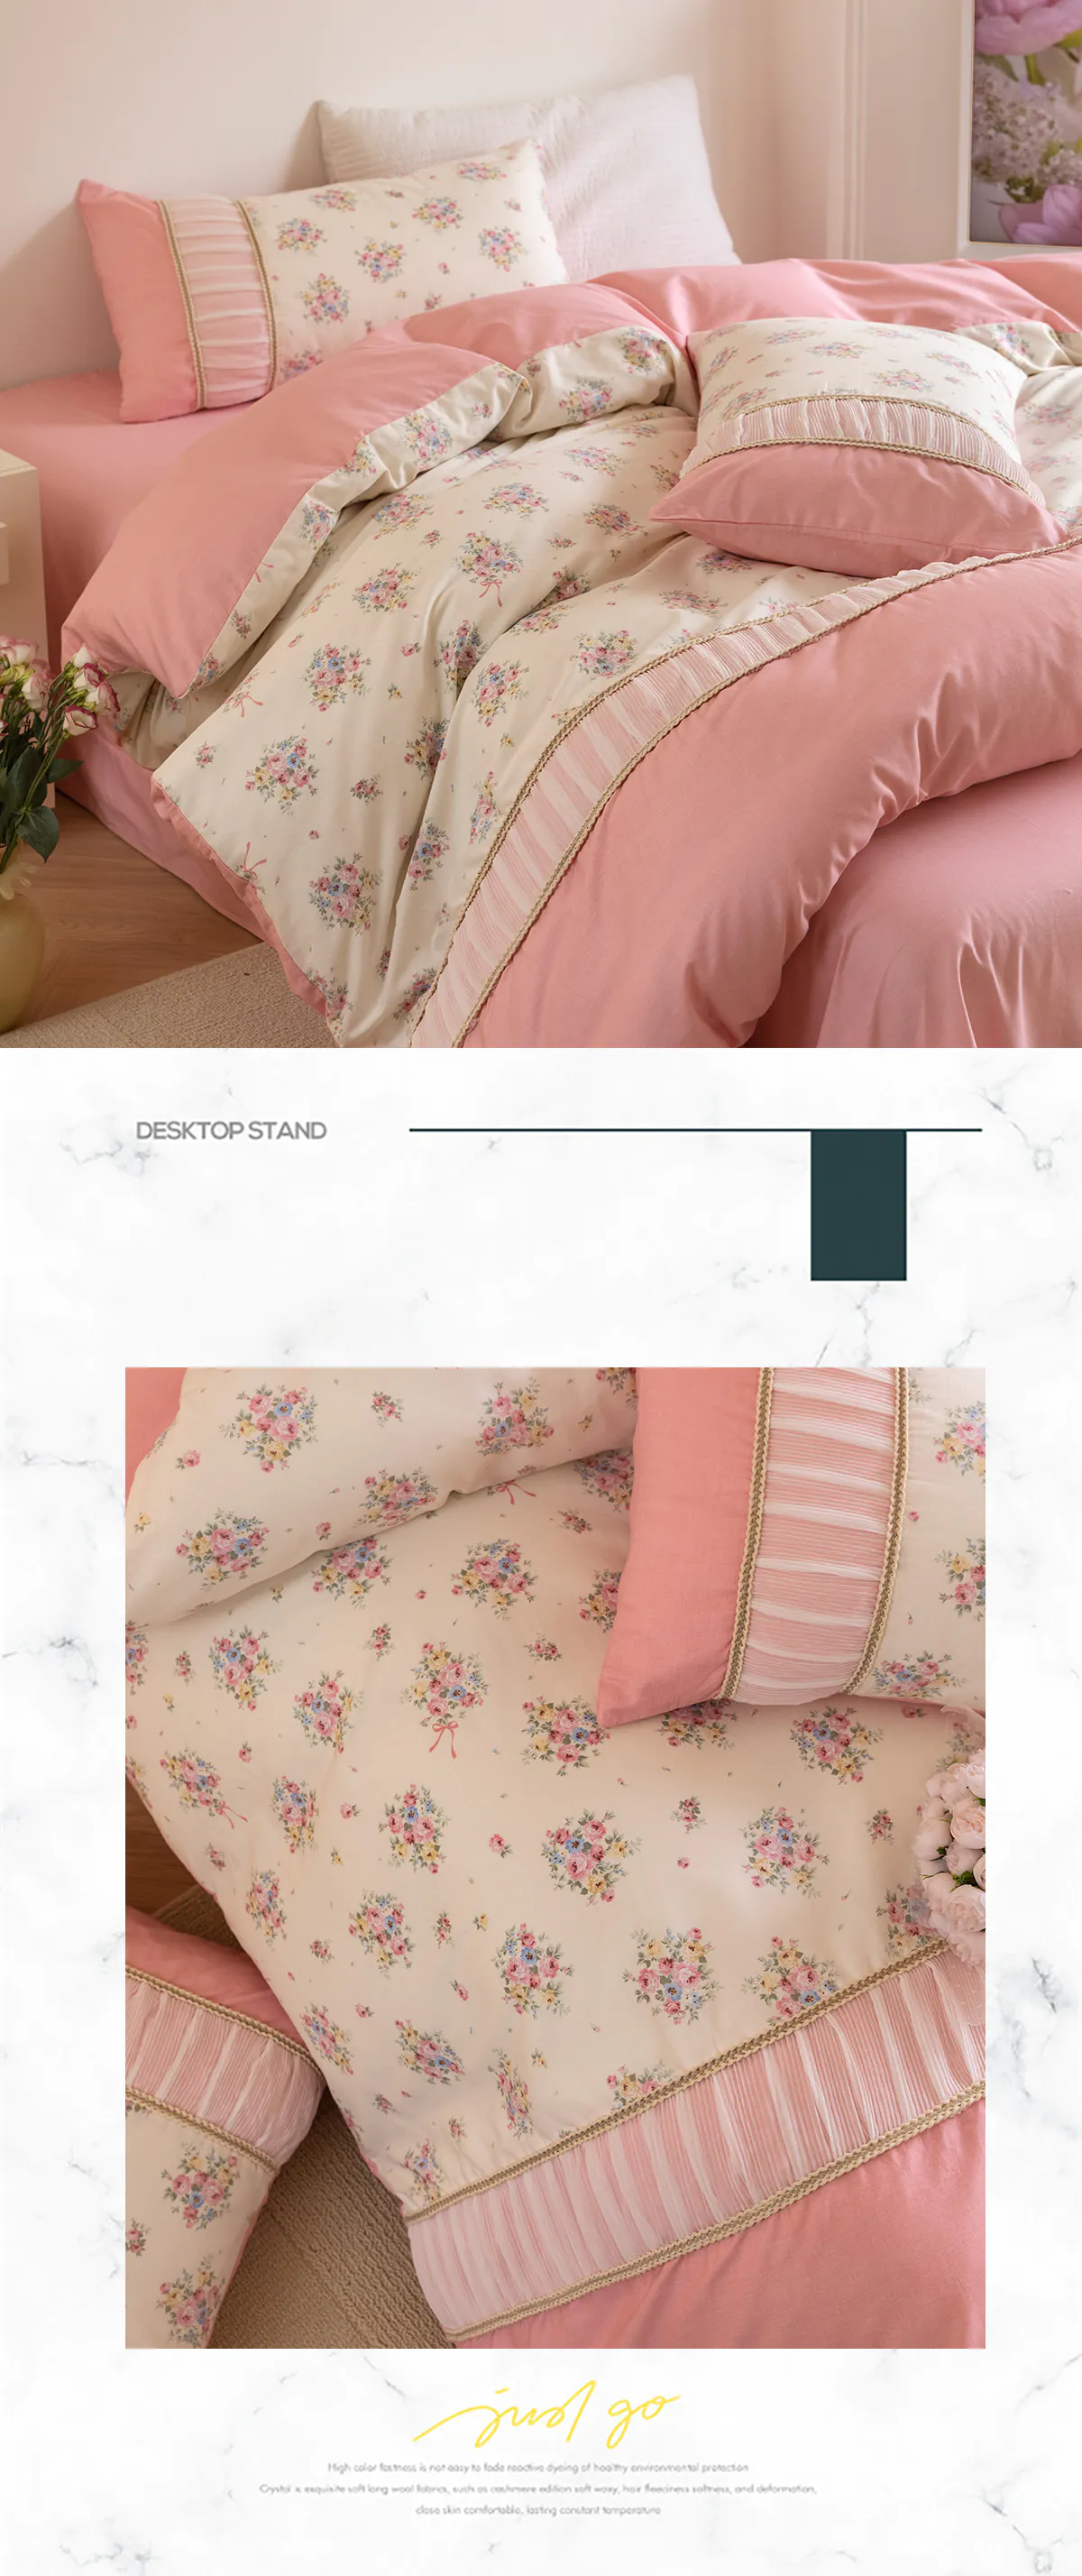 Retro-Princess-Style-100-Cotton-Floral-Duvet-Cover-Bedding-Set14